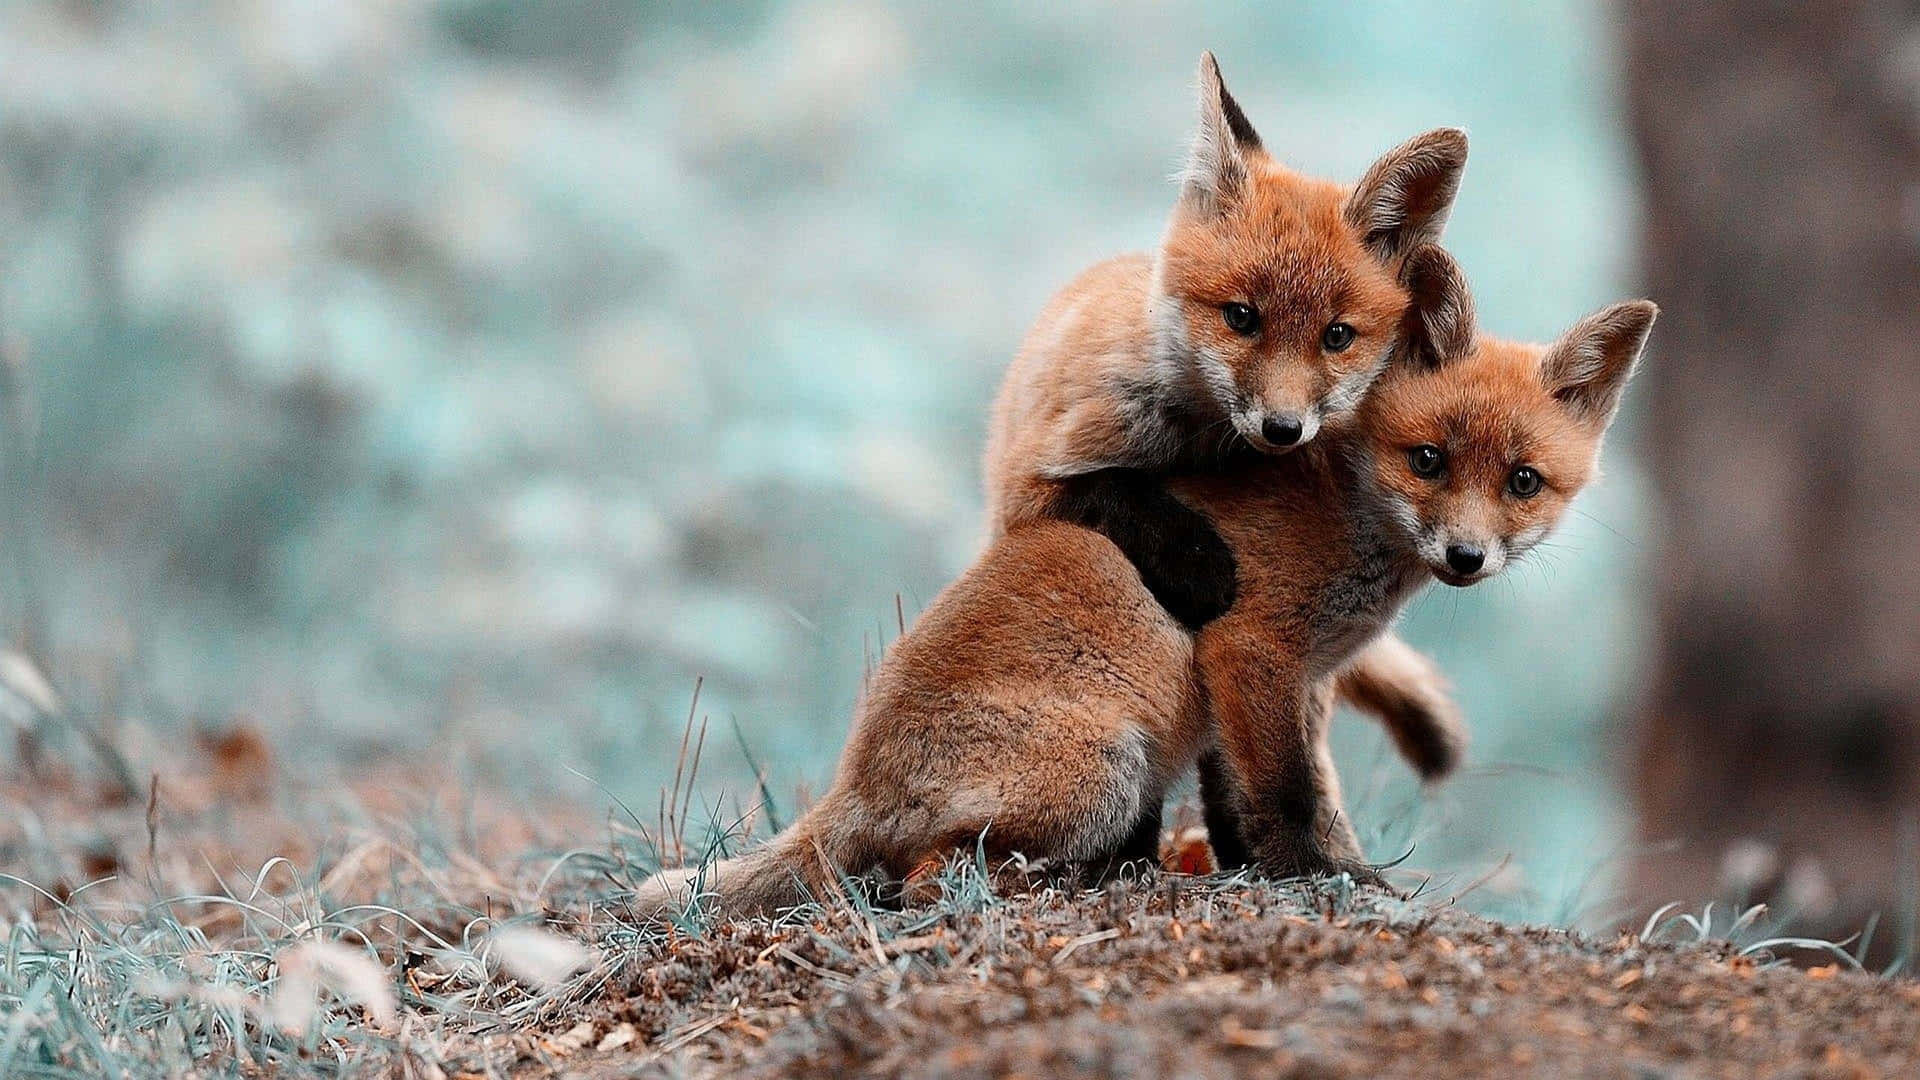 Playful Fox Cubsin Nature.jpg Wallpaper